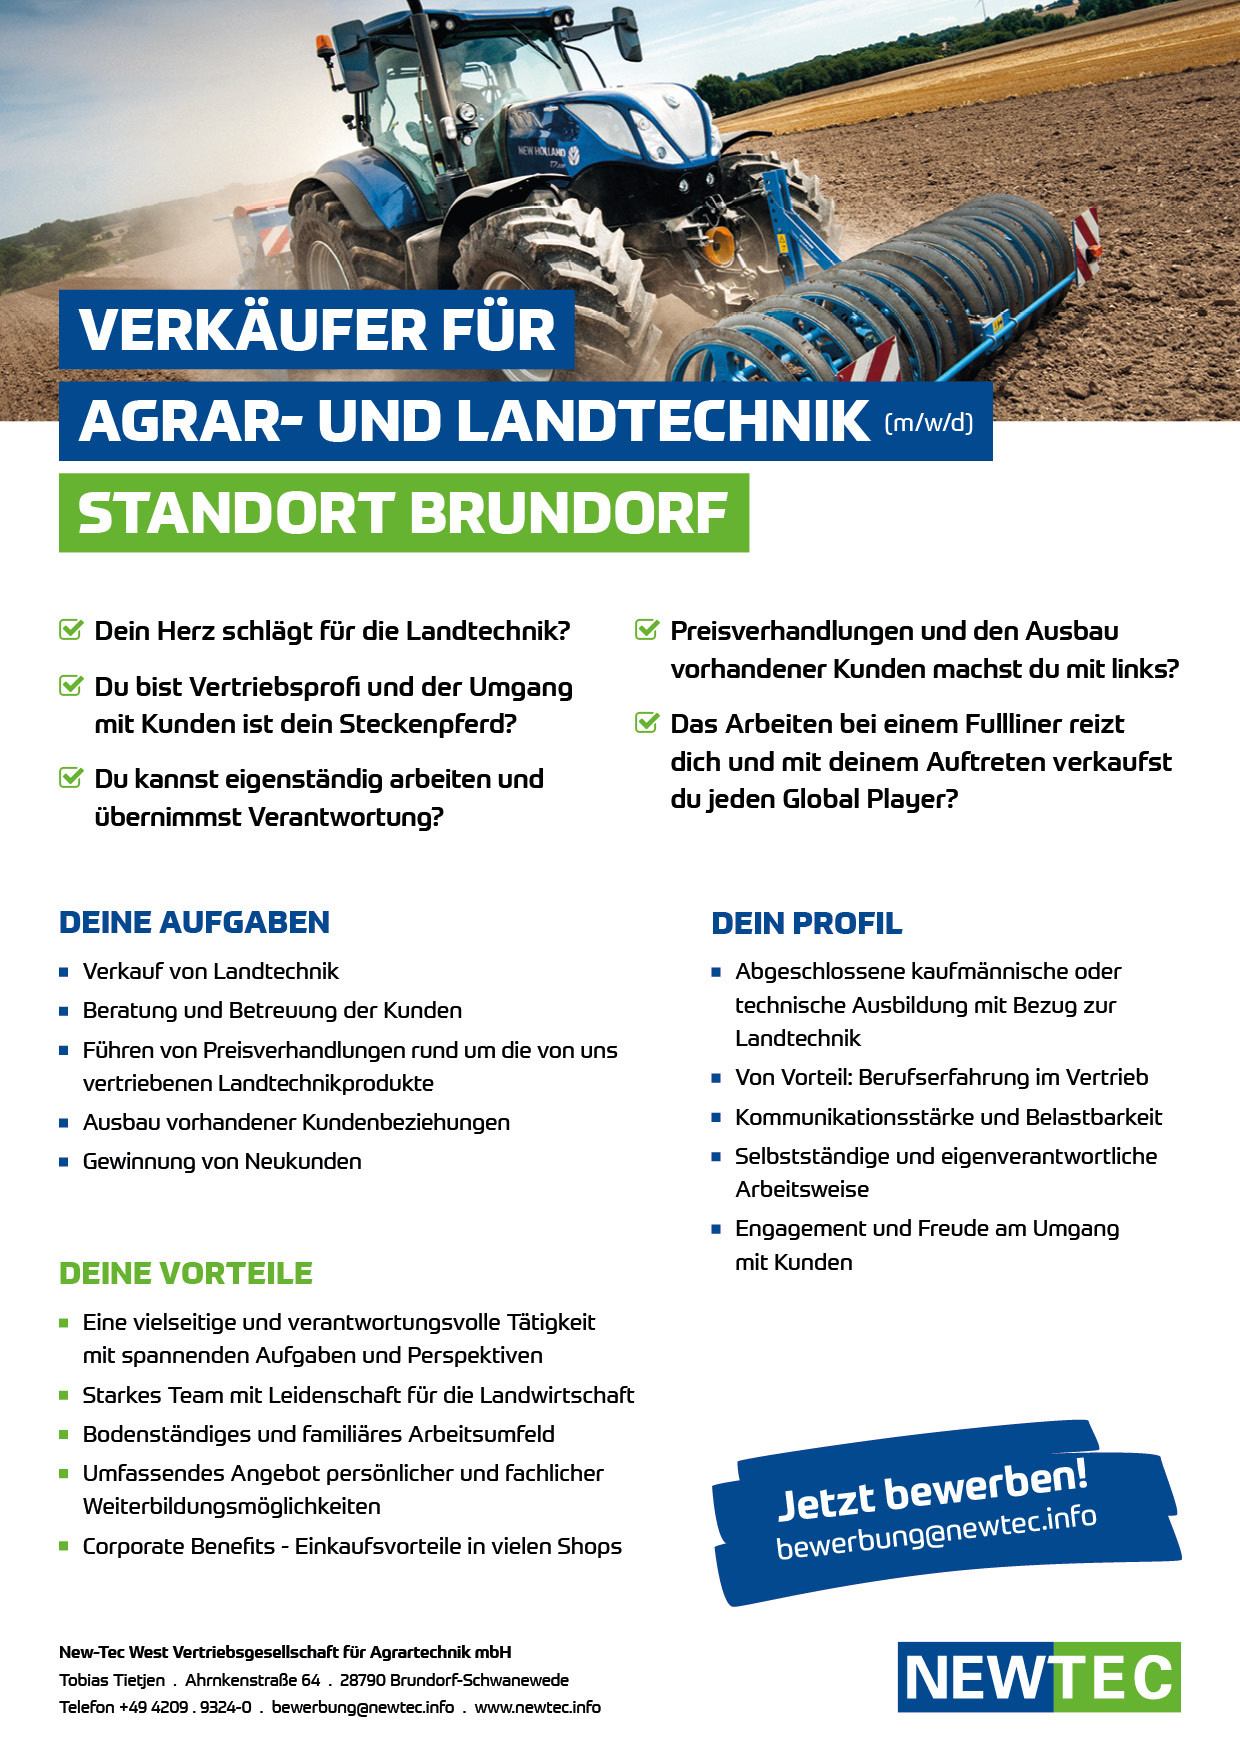 NEWTEC_Stellenanzeige_Verkaeufer_fuer_Agrar-und-Landtechnik_Brundorf